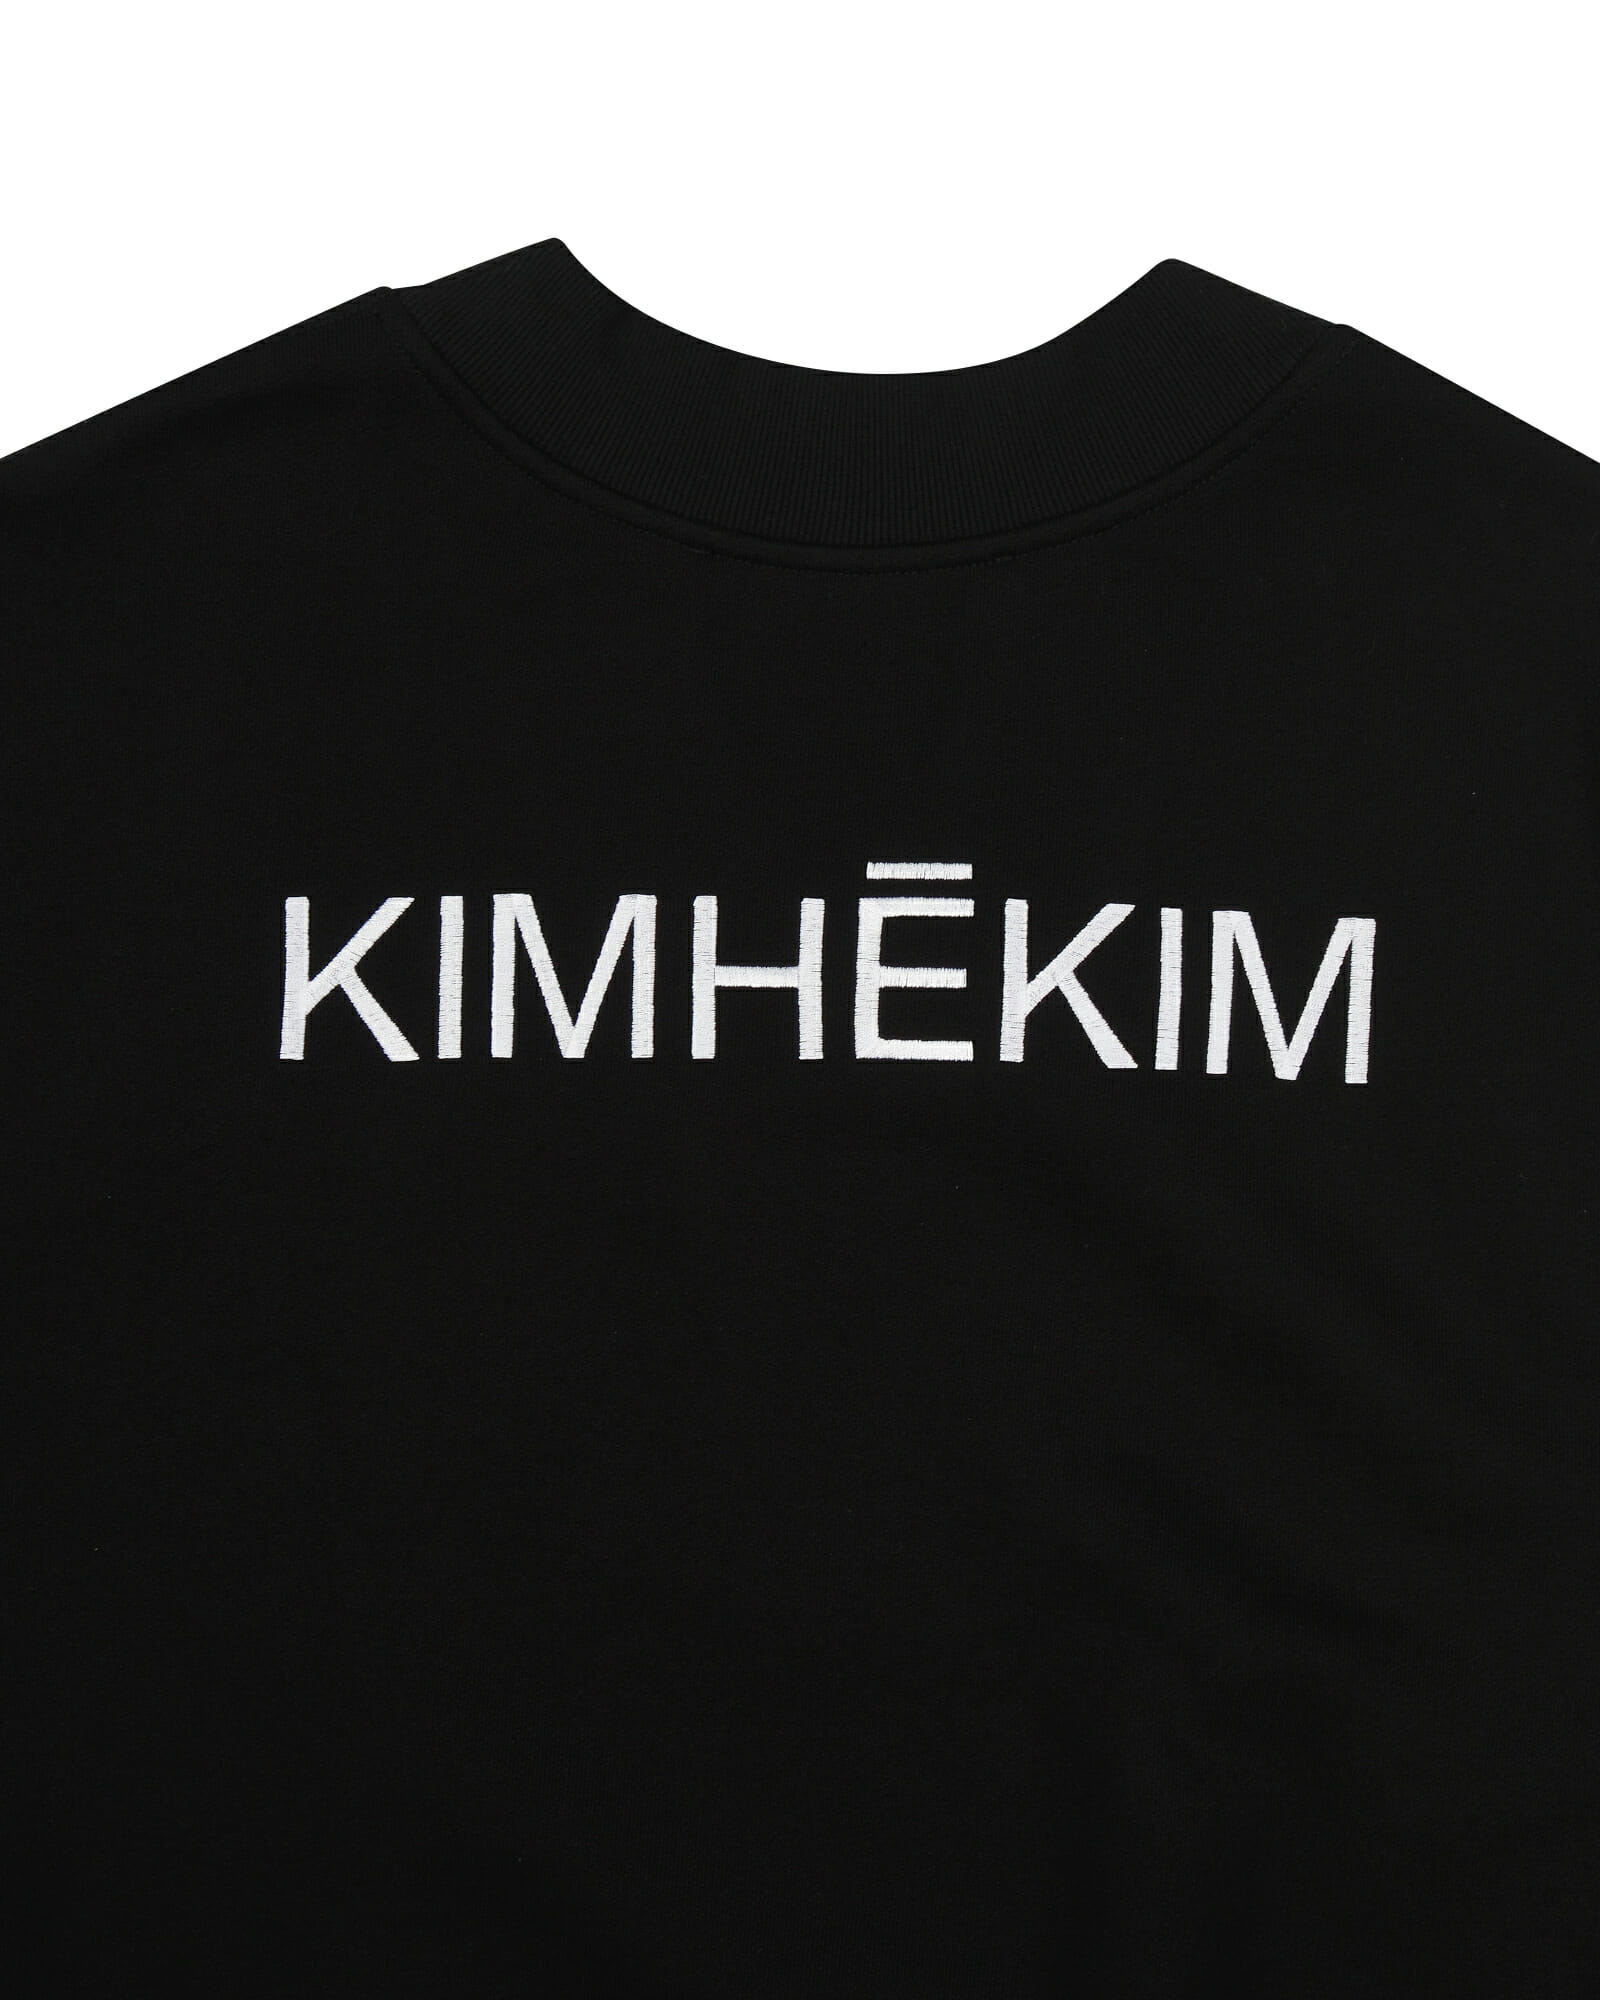 Sleeveless Sweatshirt (Black) - Kimhekim